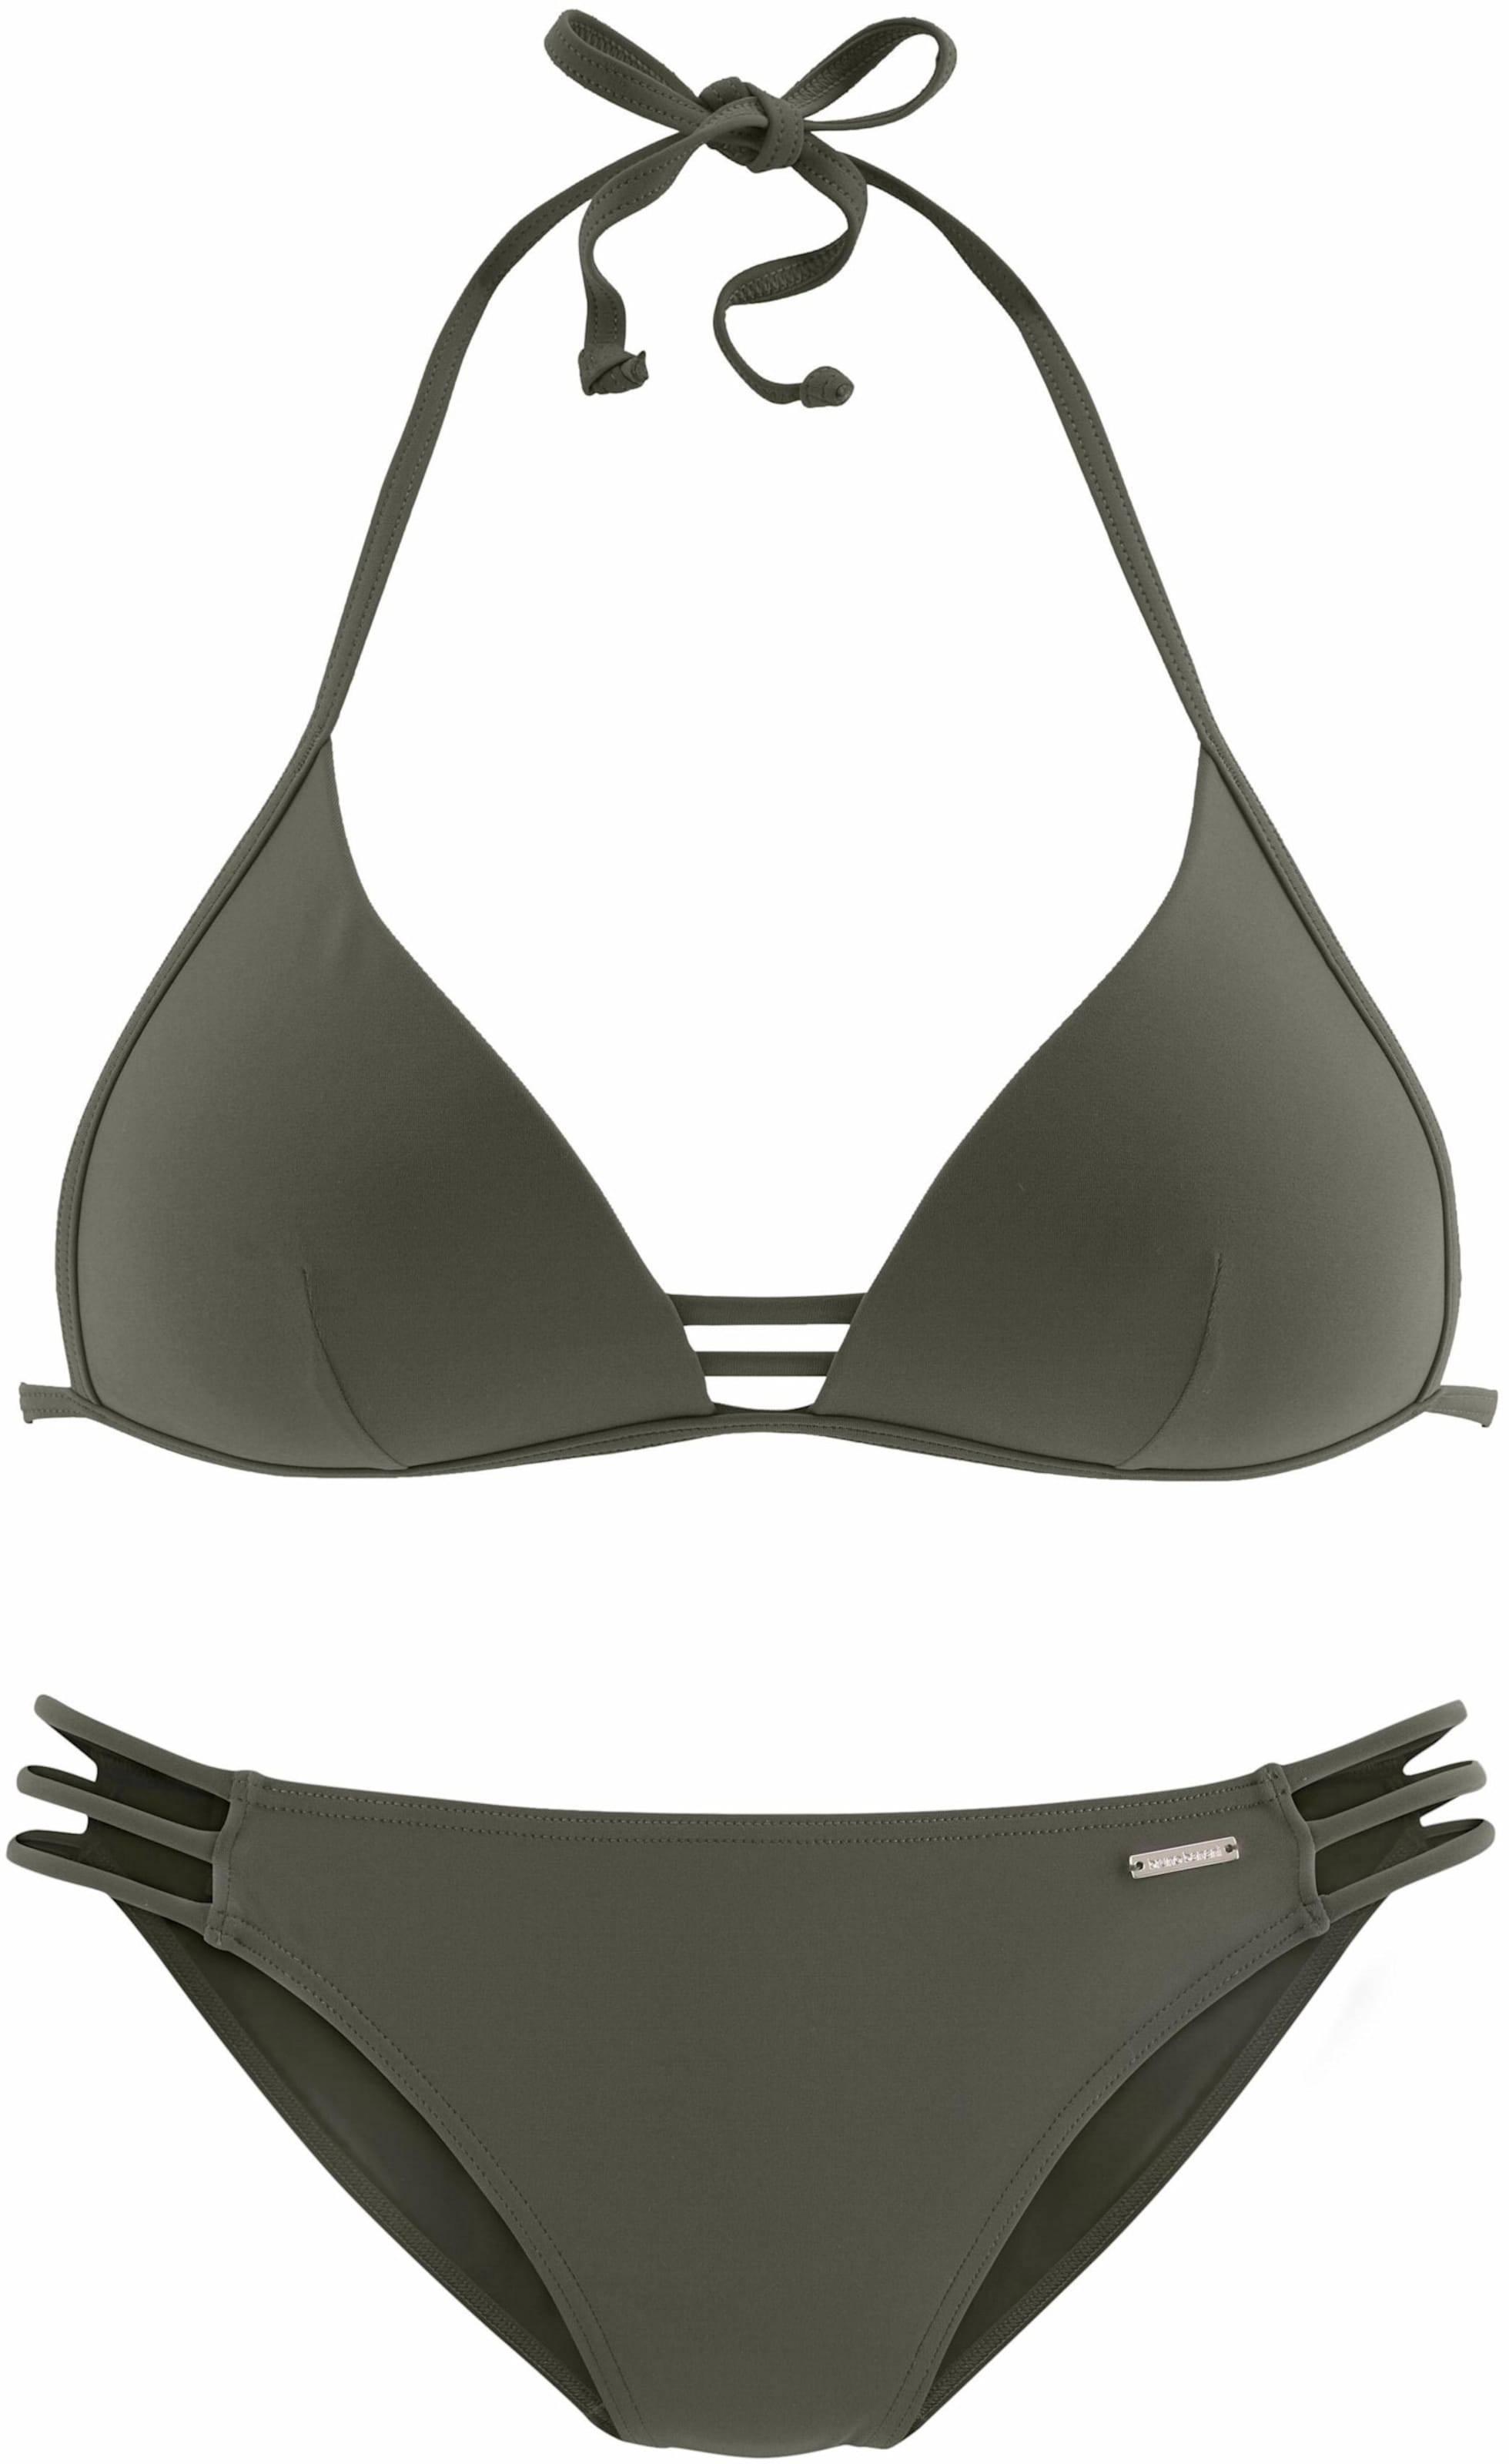 Look at günstig Kaufen-Triangel-Bikini in oliv von Bruno Banani. Triangel-Bikini in oliv von Bruno Banani <![CDATA[Stylischer Look in 3 angesagten Unifarben. Eingearbeitete Softcups mit integrierter Verstärkung. Hose mit seitlichen Bändern.]]>. 